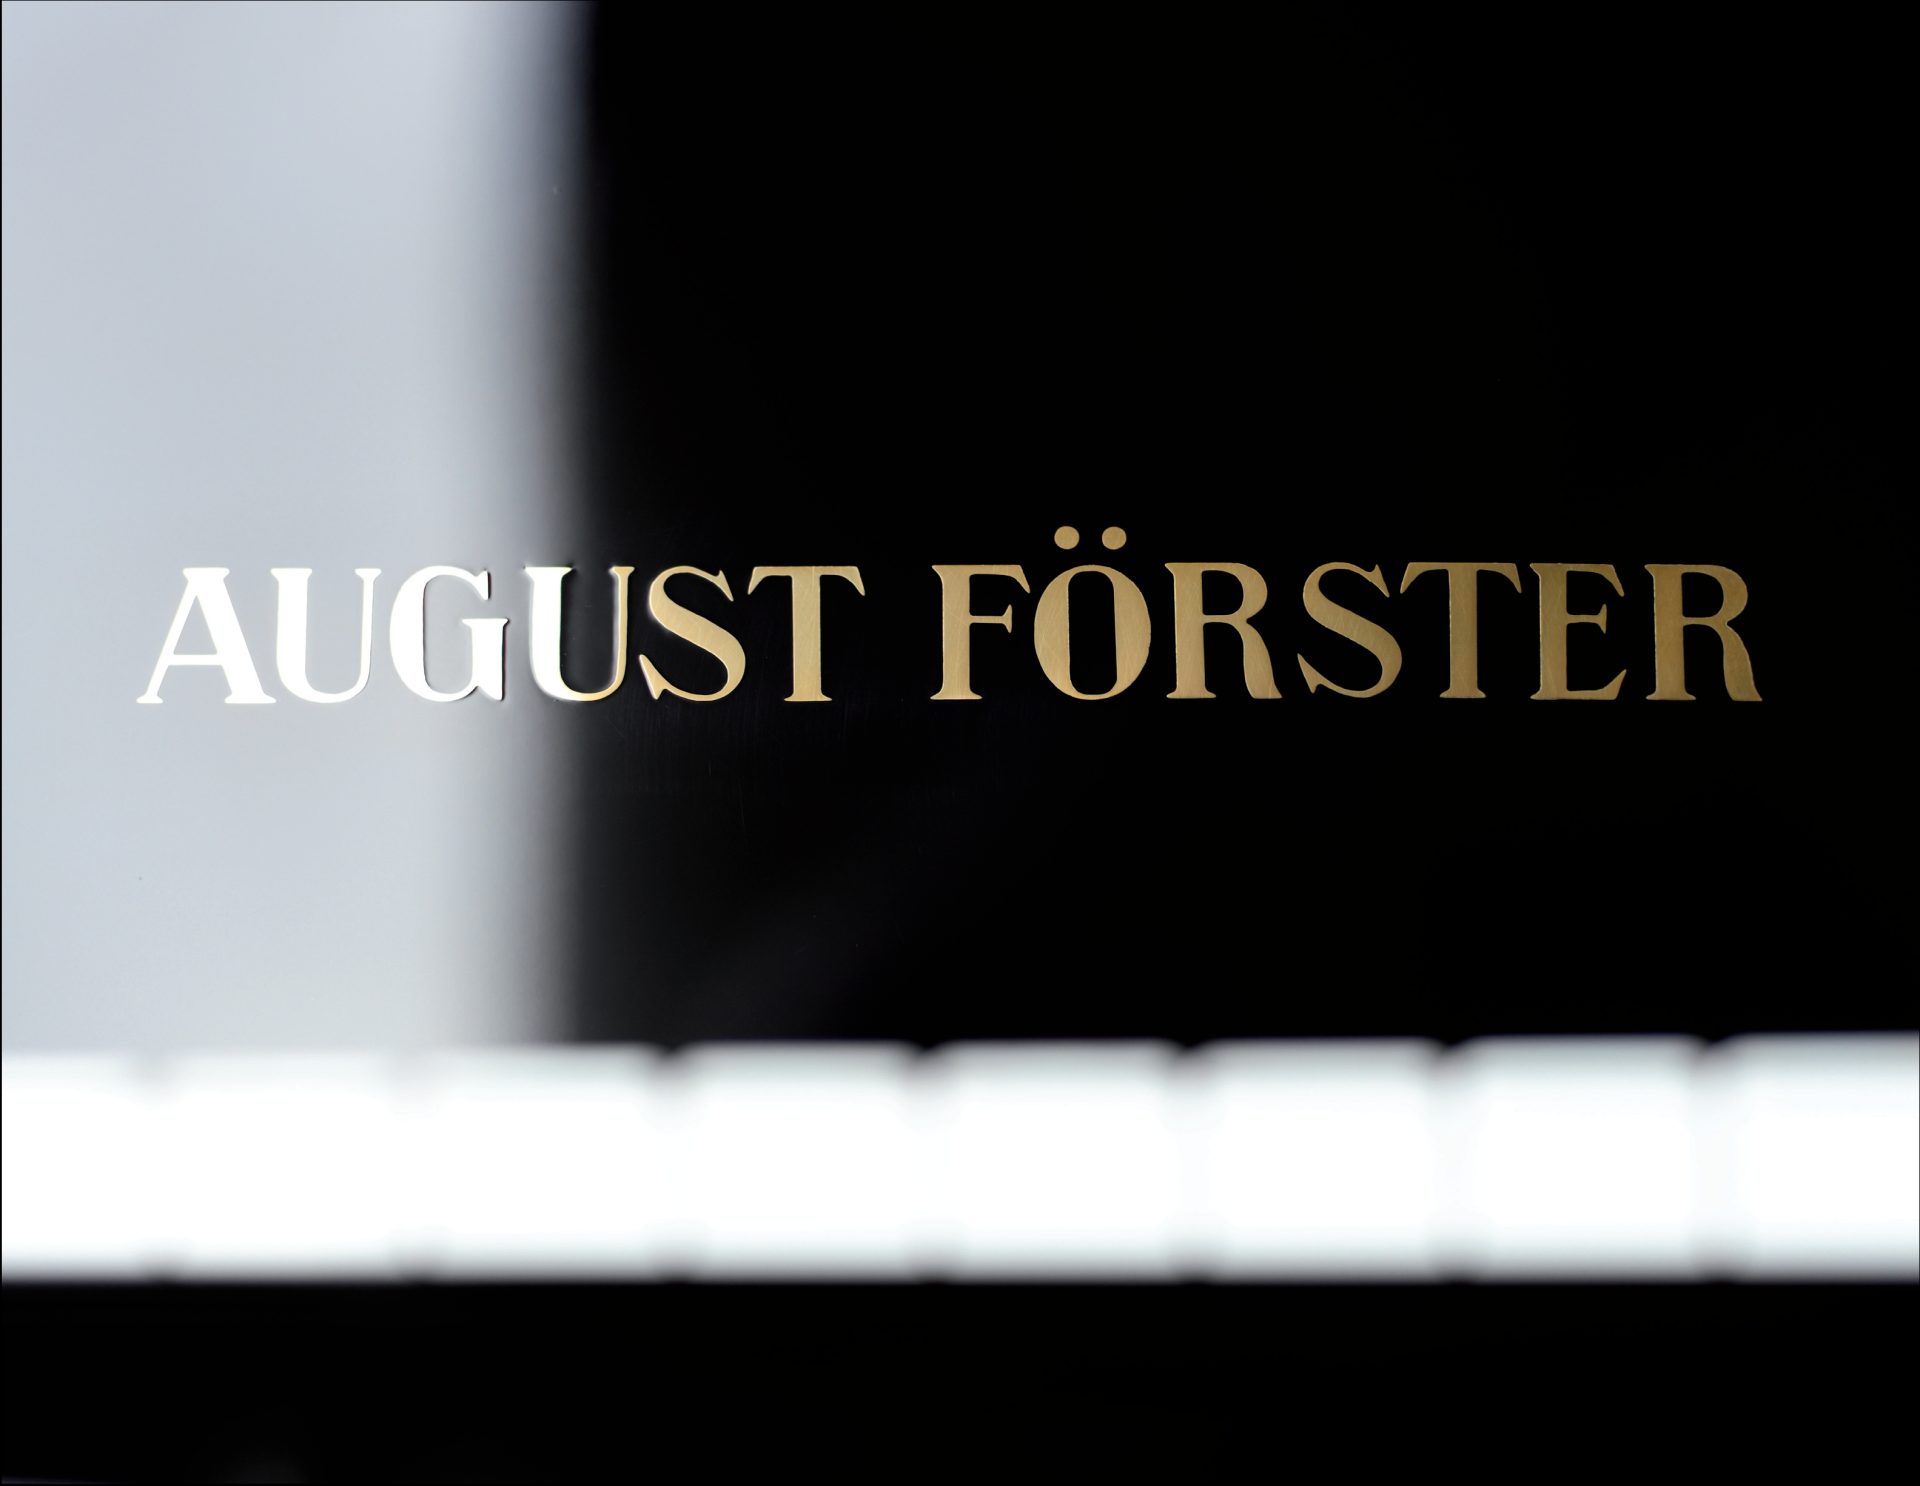 August Förster
116 C